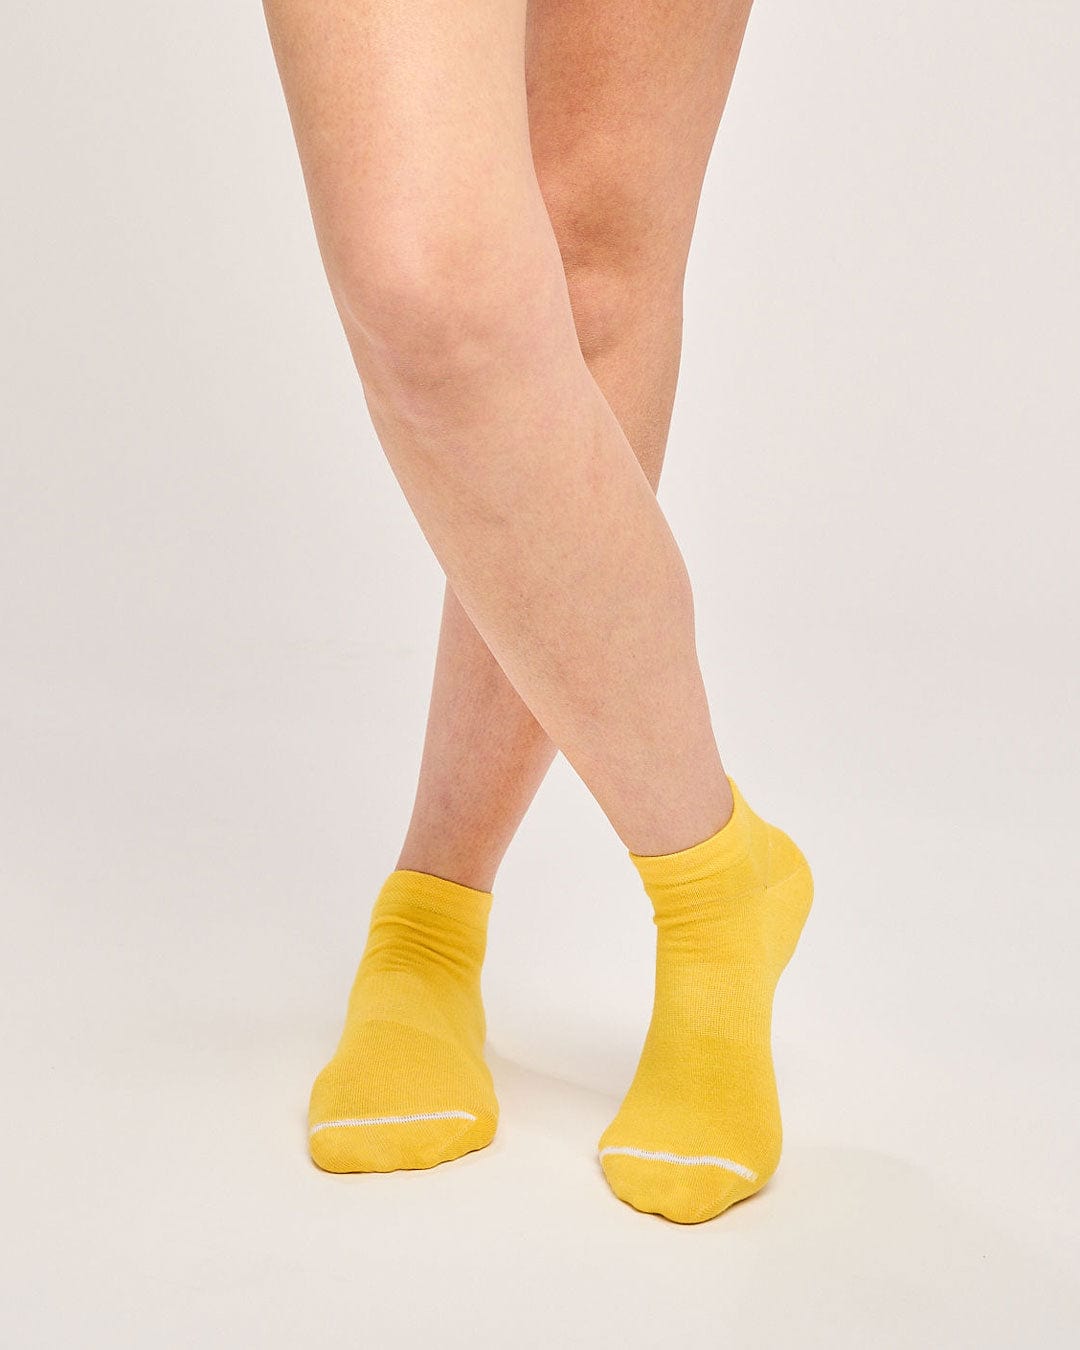 Sustainable yellow trainer socks. Ecofriendly fun running socks